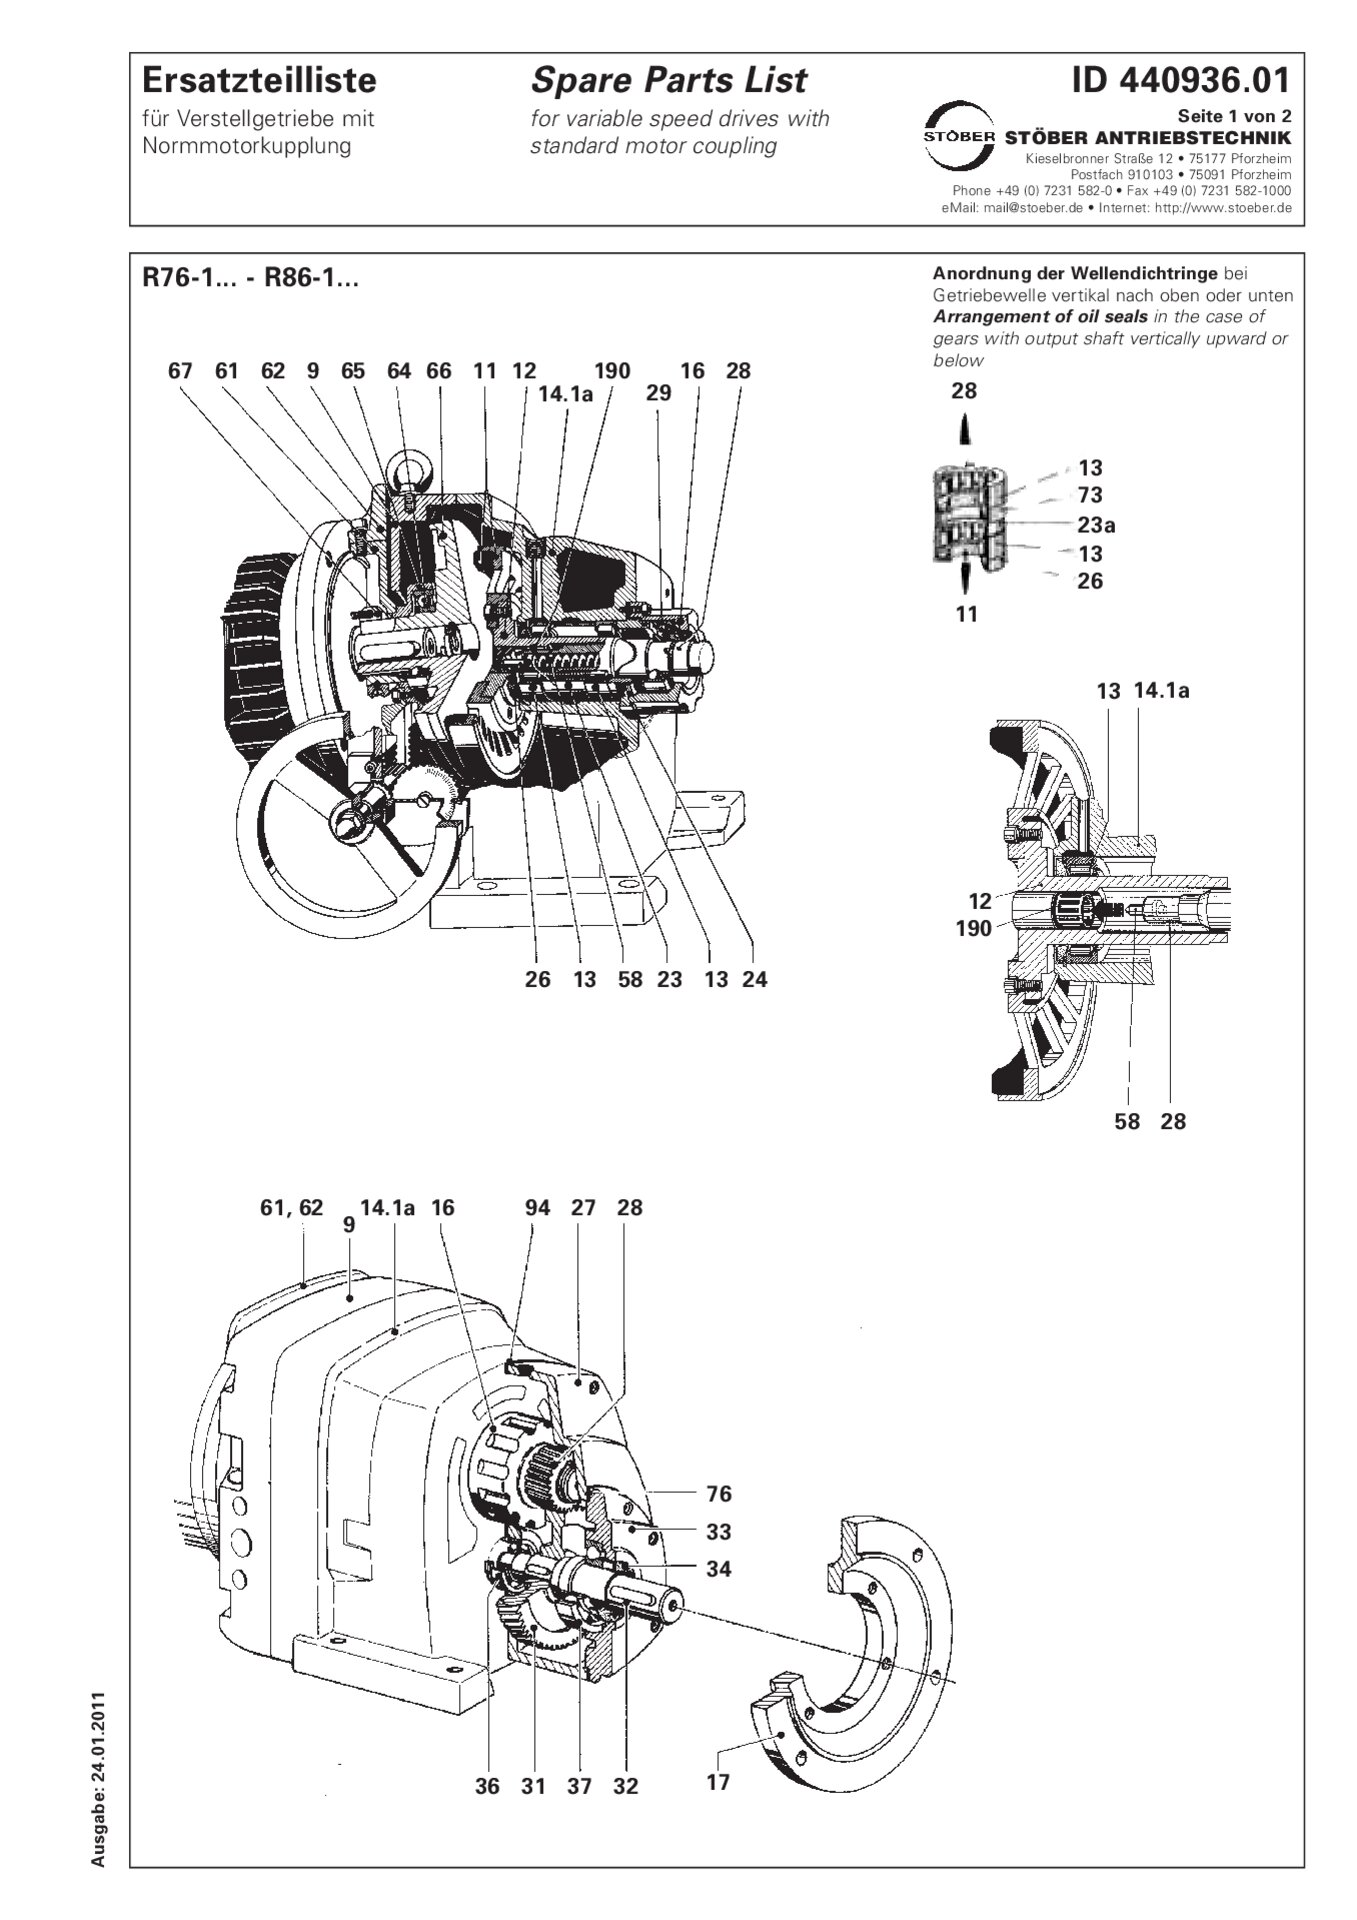 Liste des pièces de rechange R76-1/R86-1 avec accouplement de moteur standard